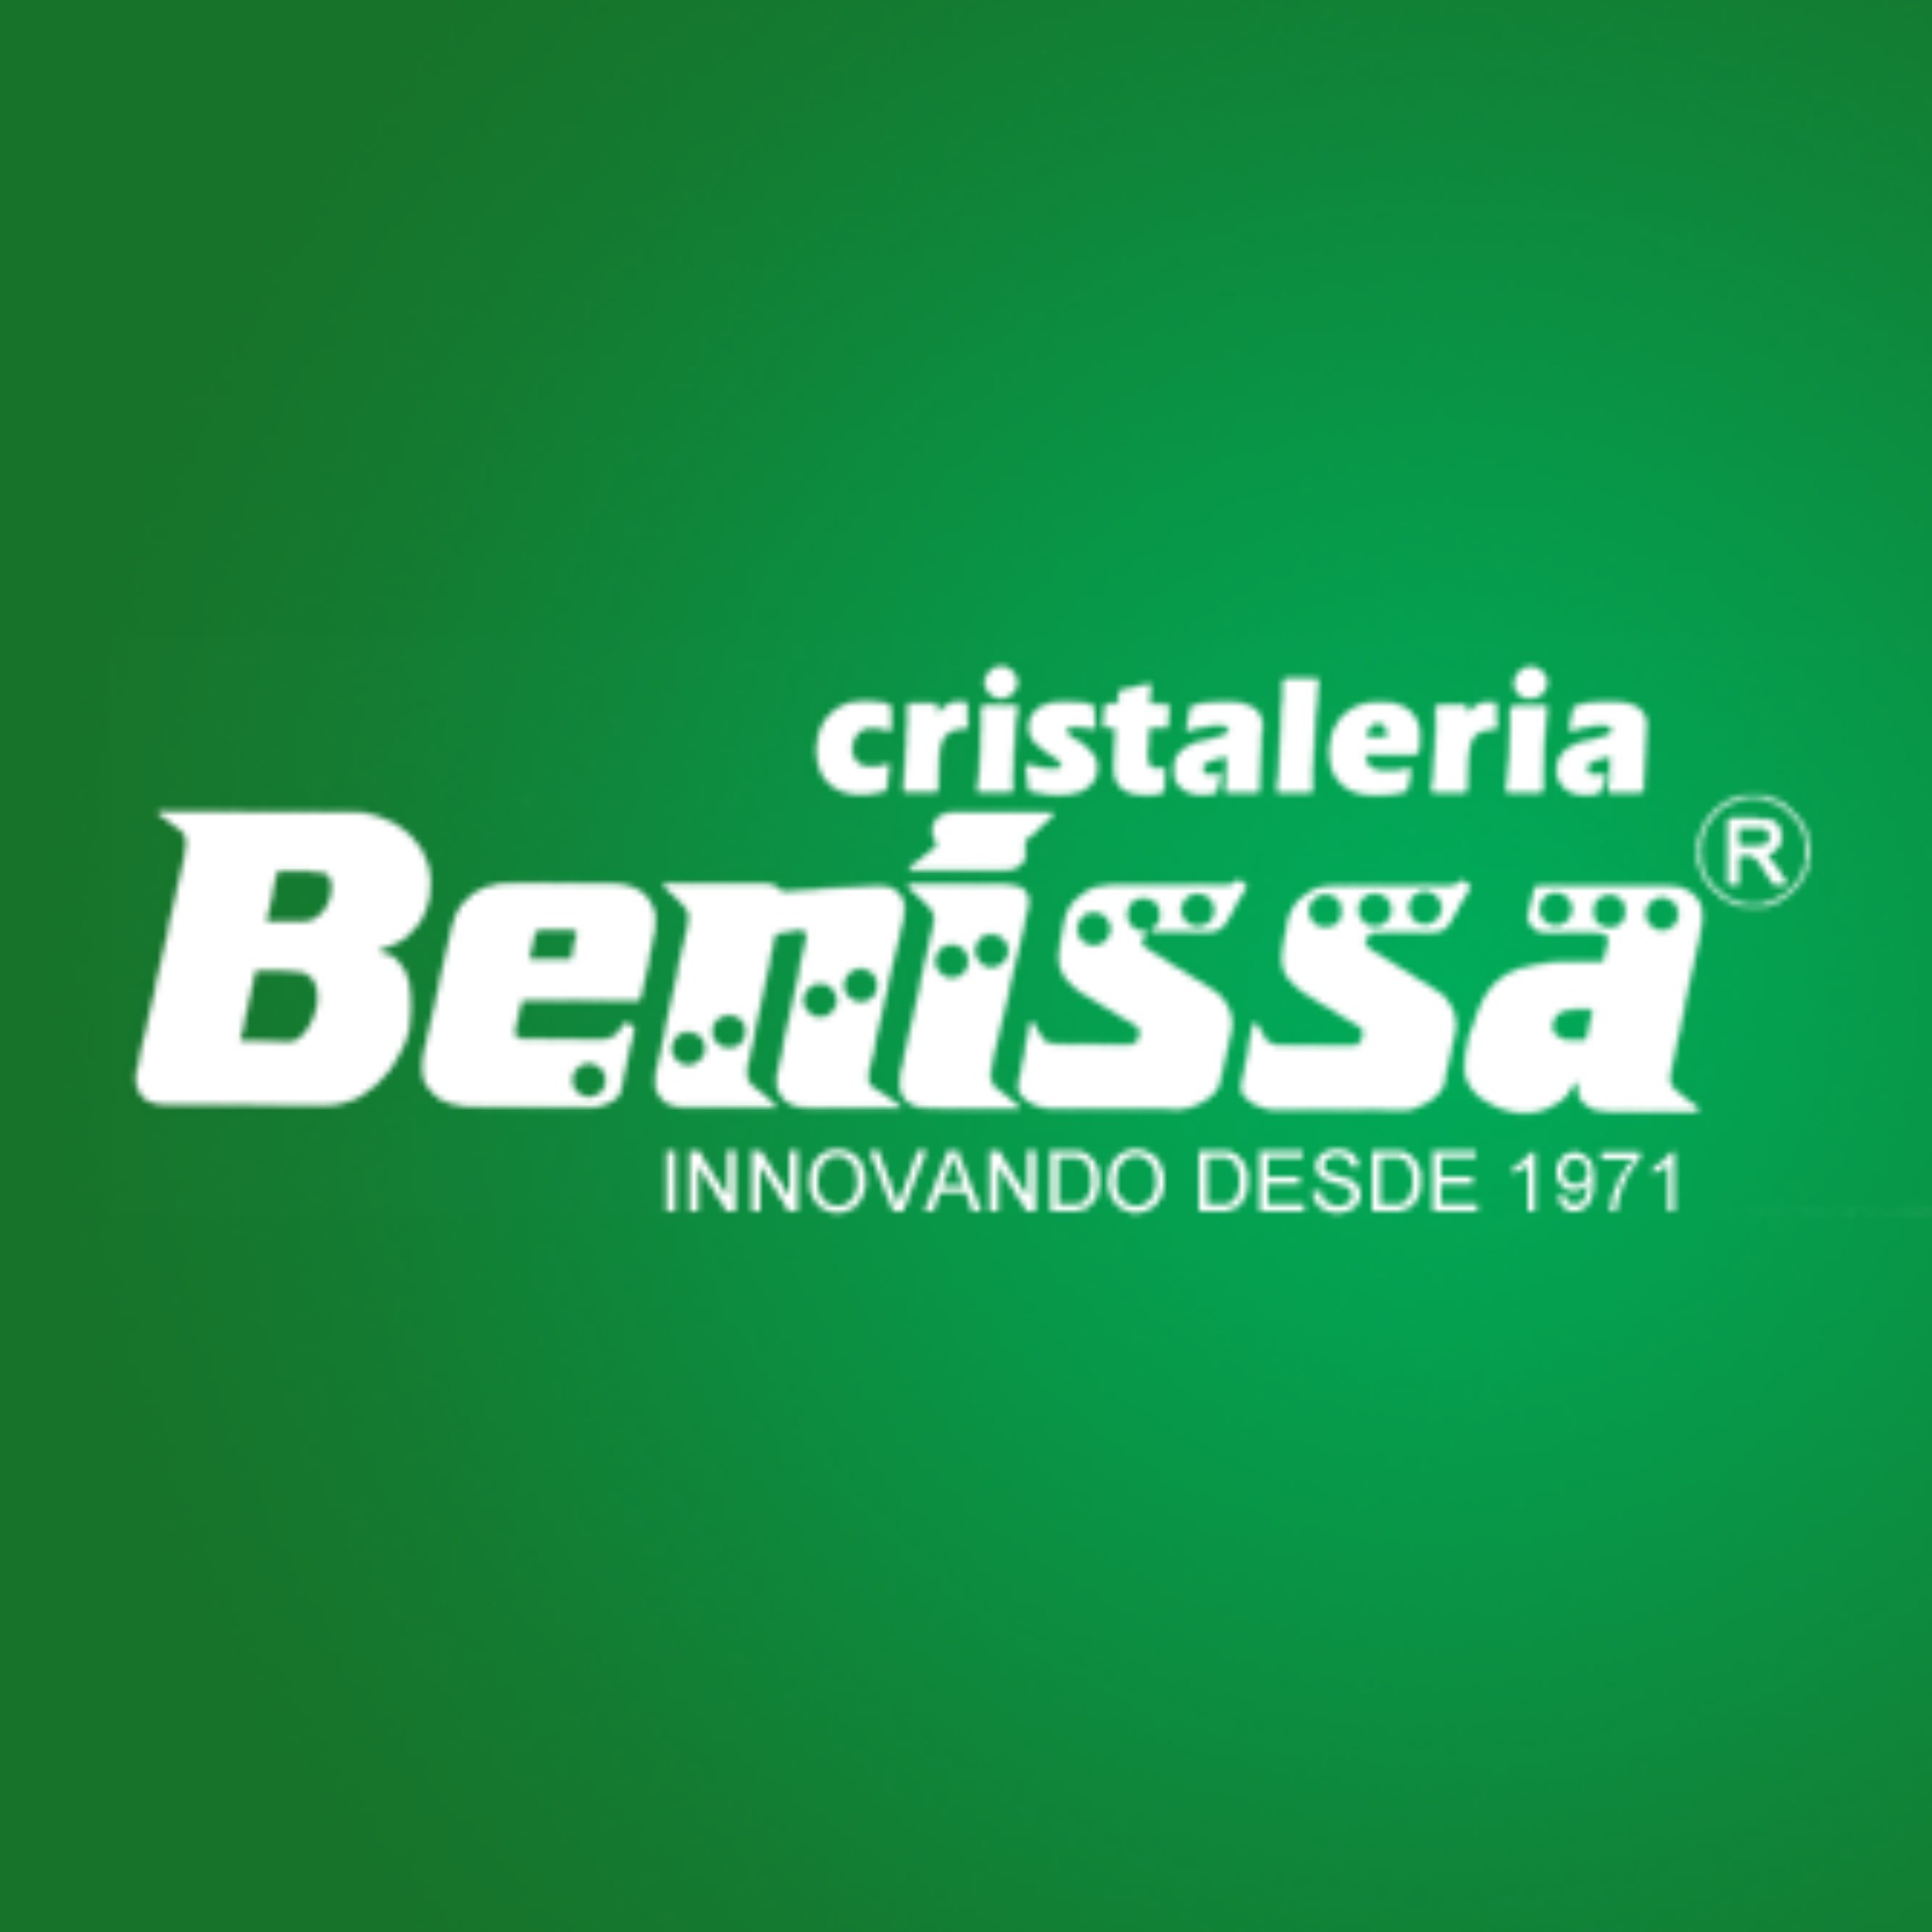 Cristalería Benissa S.L